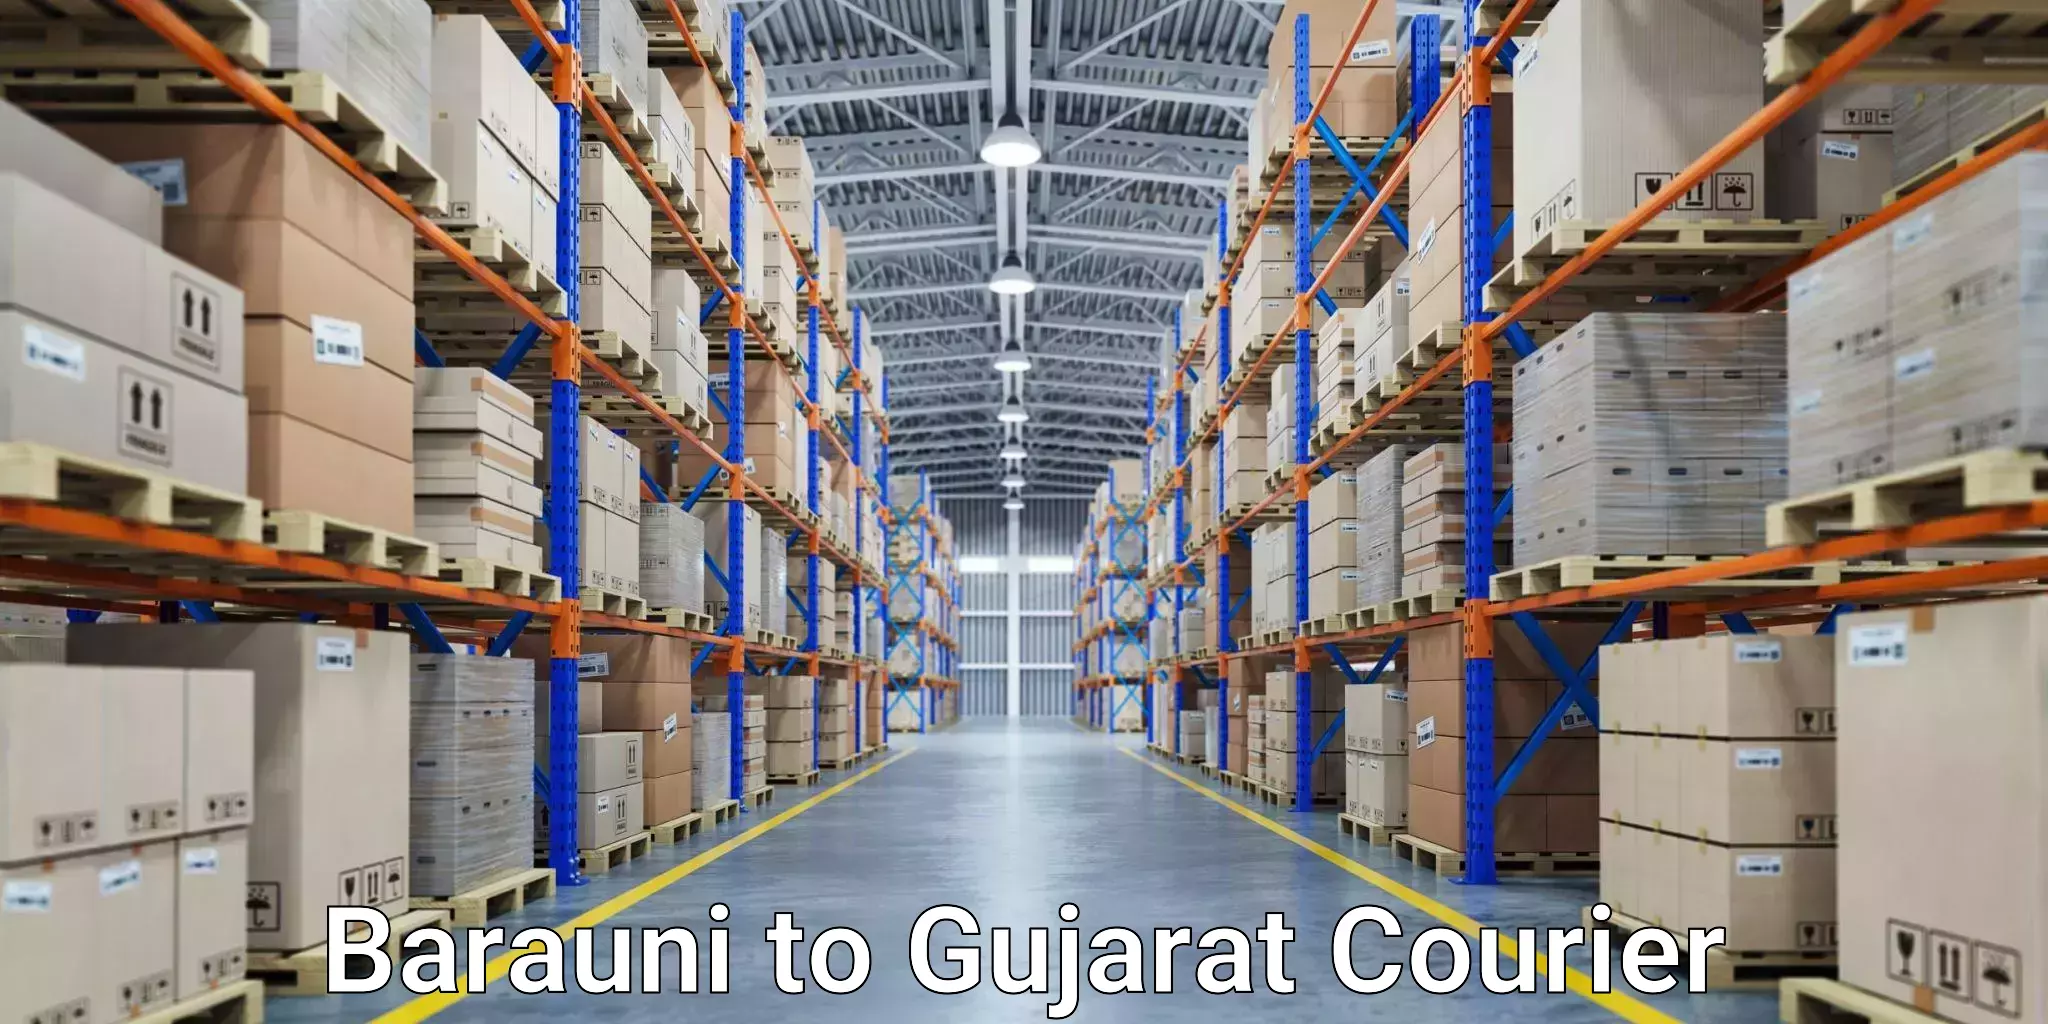 Express mail service Barauni to Kalol Gujarat